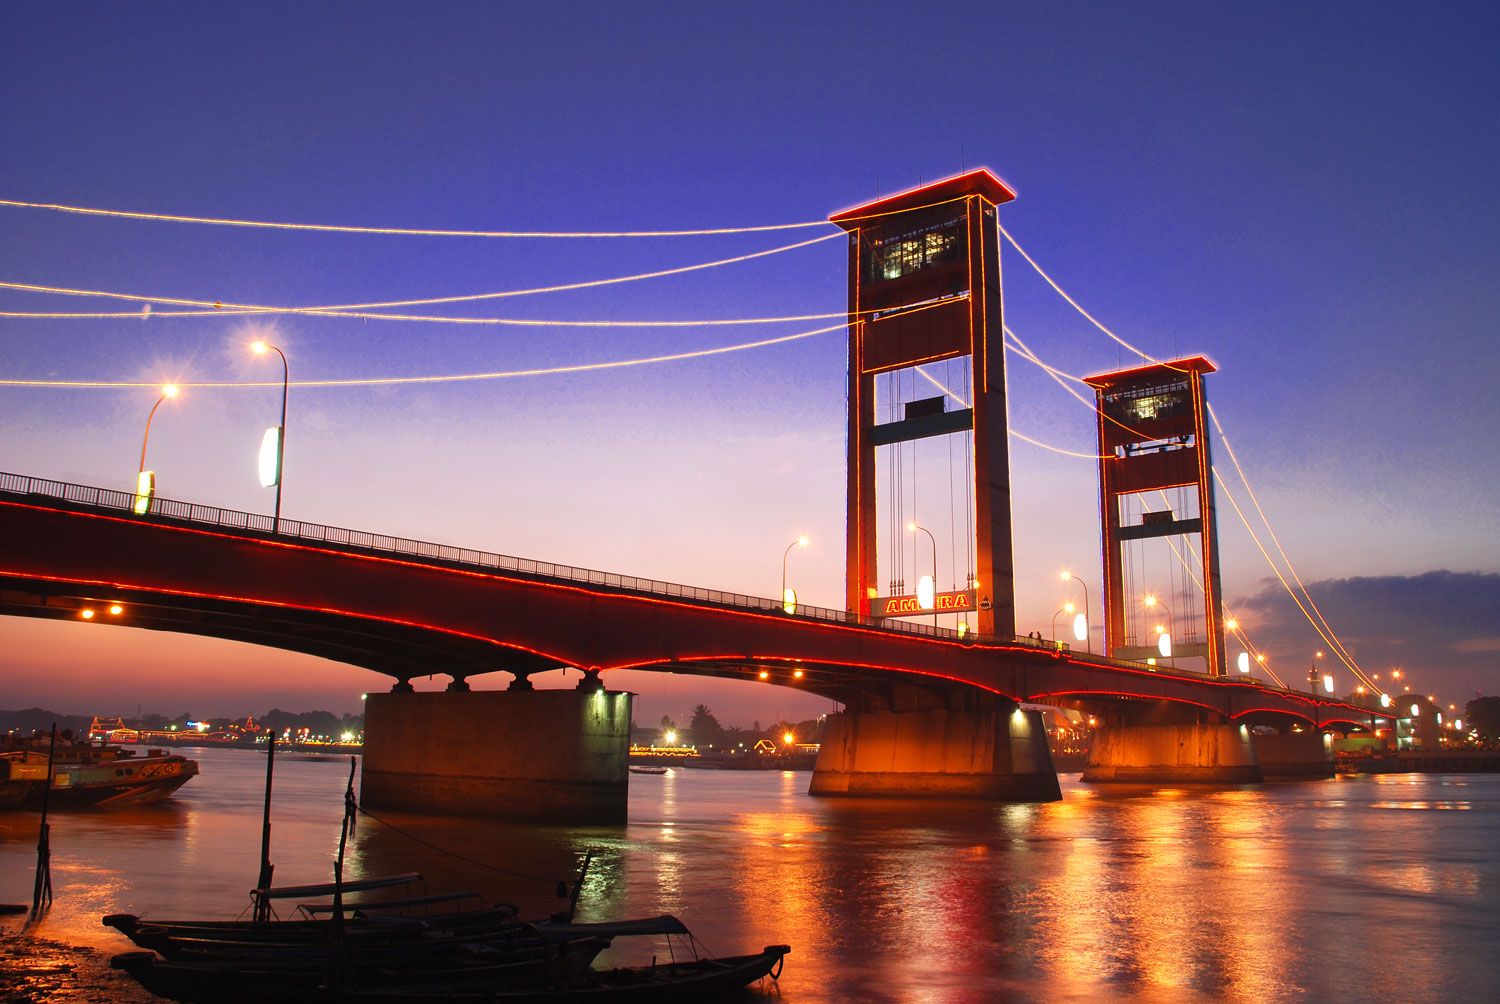 Tempat Wisata Terbaik di kota Palembang Jembatan Ampera